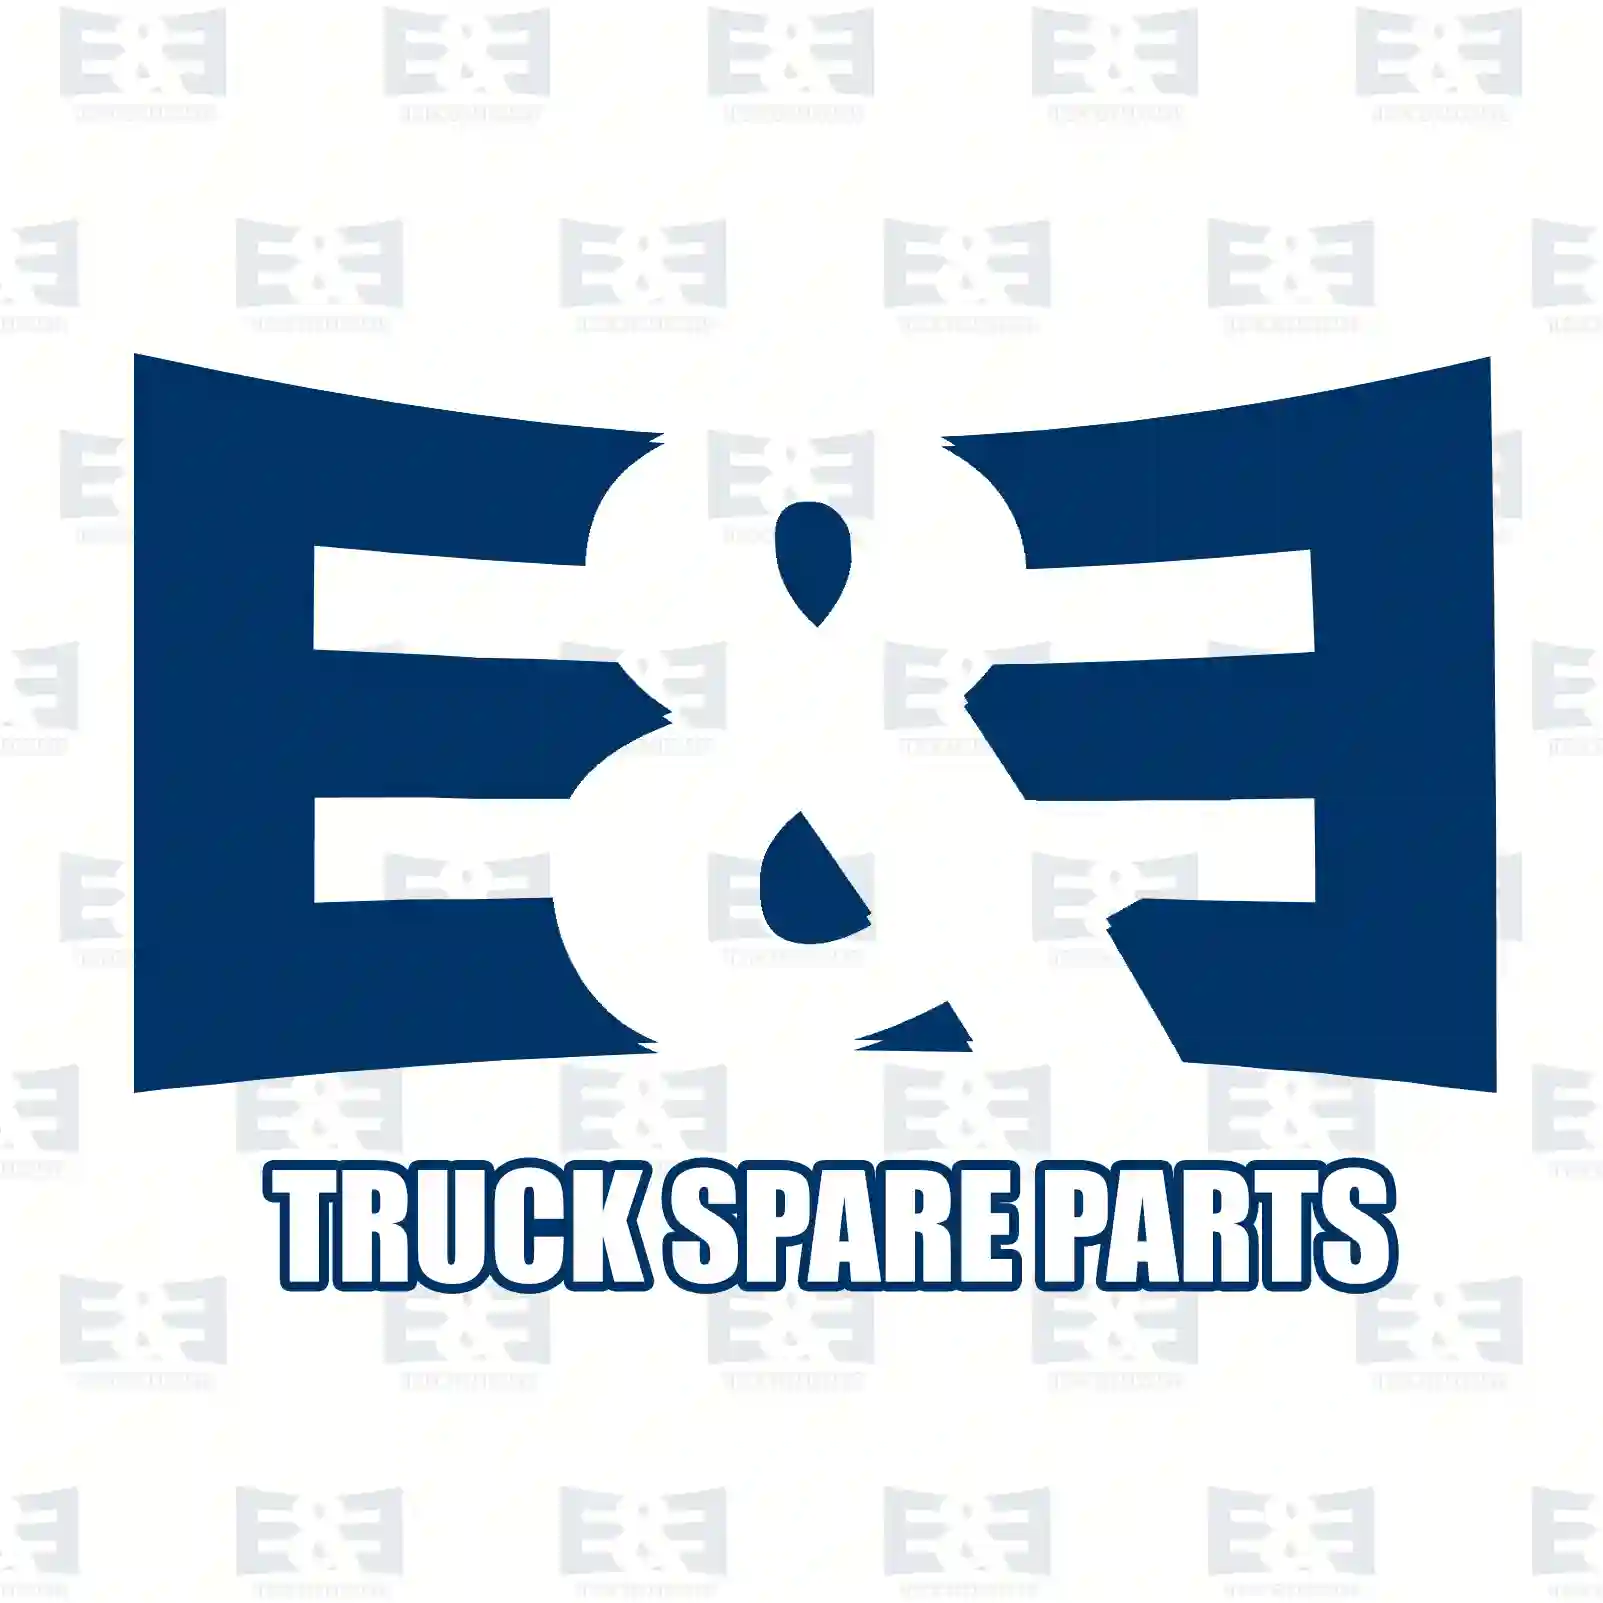 Repair kit, clutch servo, 2E2288284, 3095041, 8510214 ||  2E2288284 E&E Truck Spare Parts | Truck Spare Parts, Auotomotive Spare Parts Repair kit, clutch servo, 2E2288284, 3095041, 8510214 ||  2E2288284 E&E Truck Spare Parts | Truck Spare Parts, Auotomotive Spare Parts